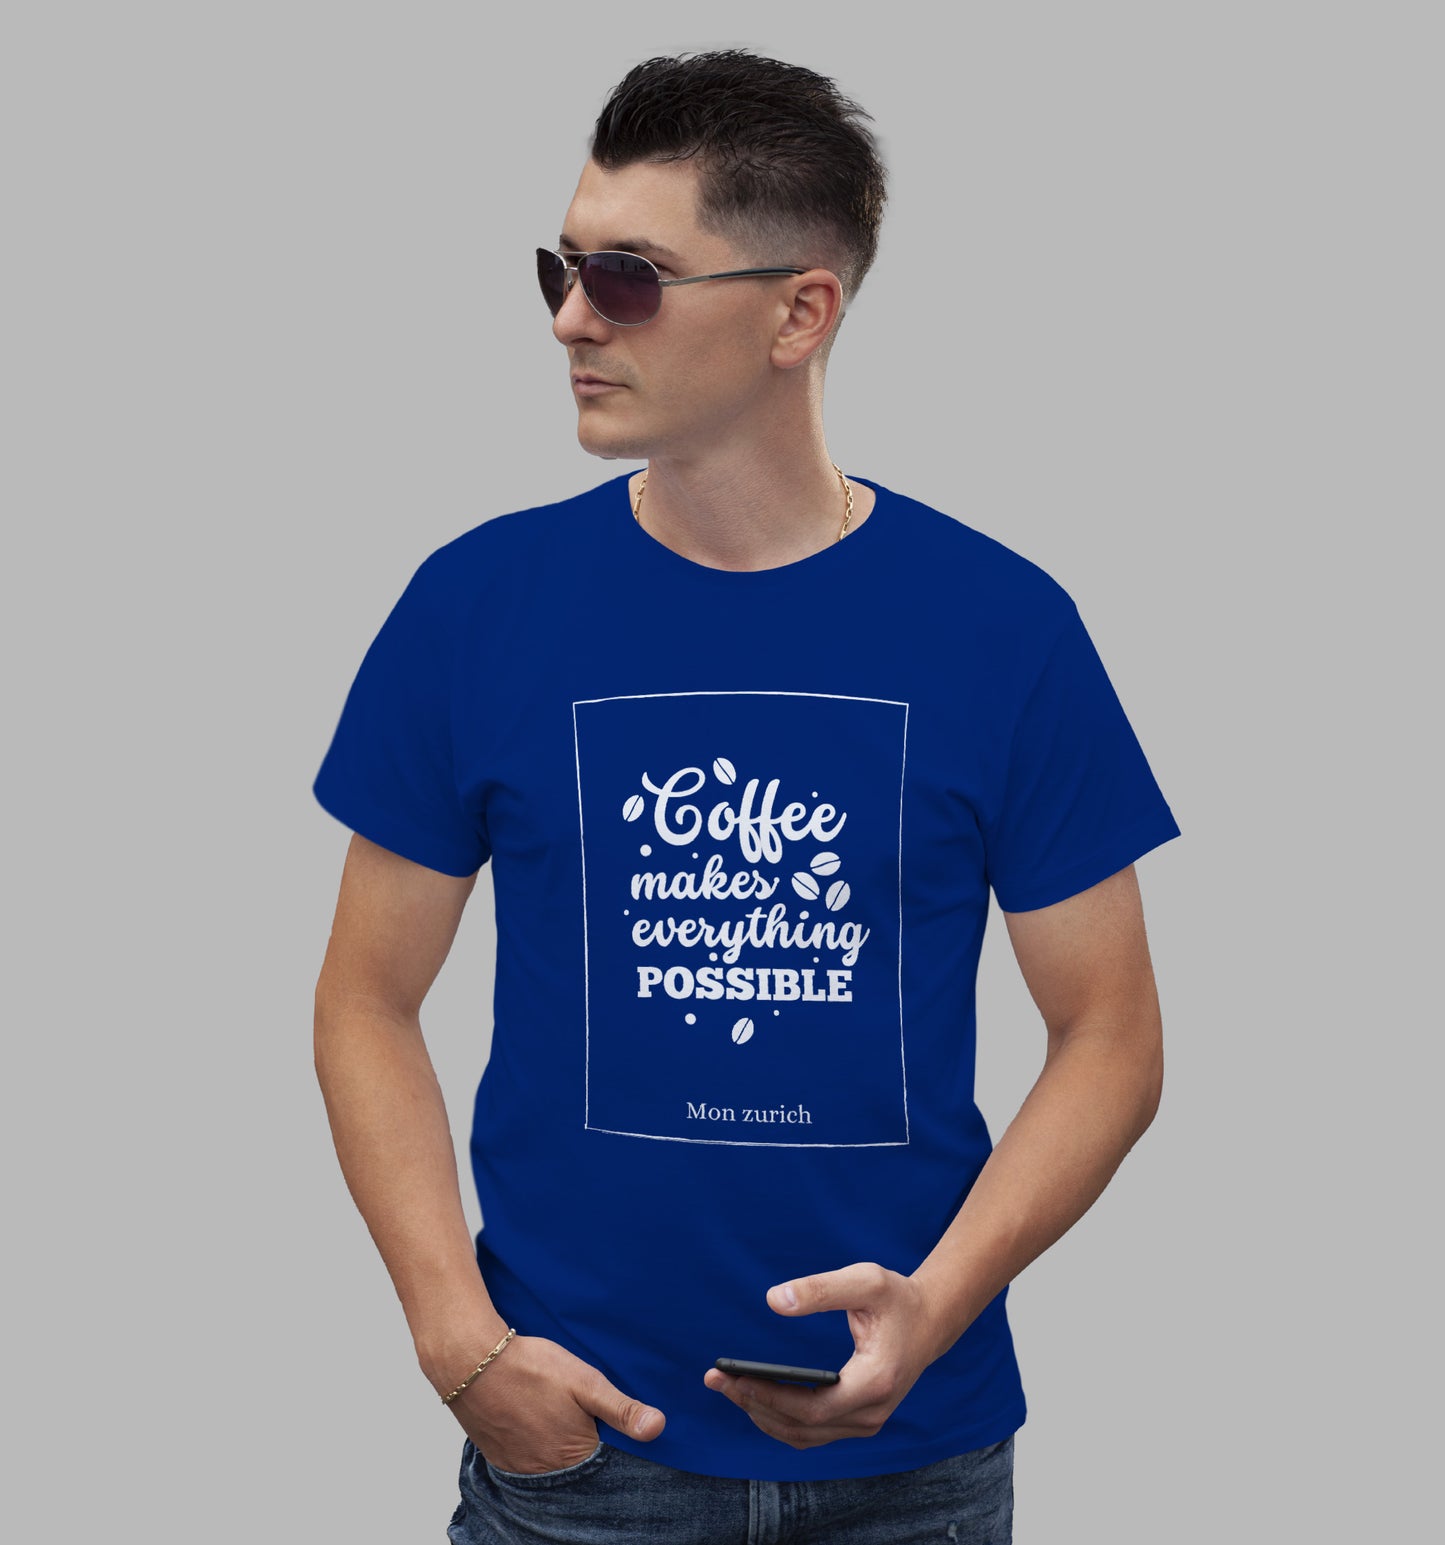 Coffee Makes Every Thing Better T-Shirt In Dark - Mon Zurich Originals